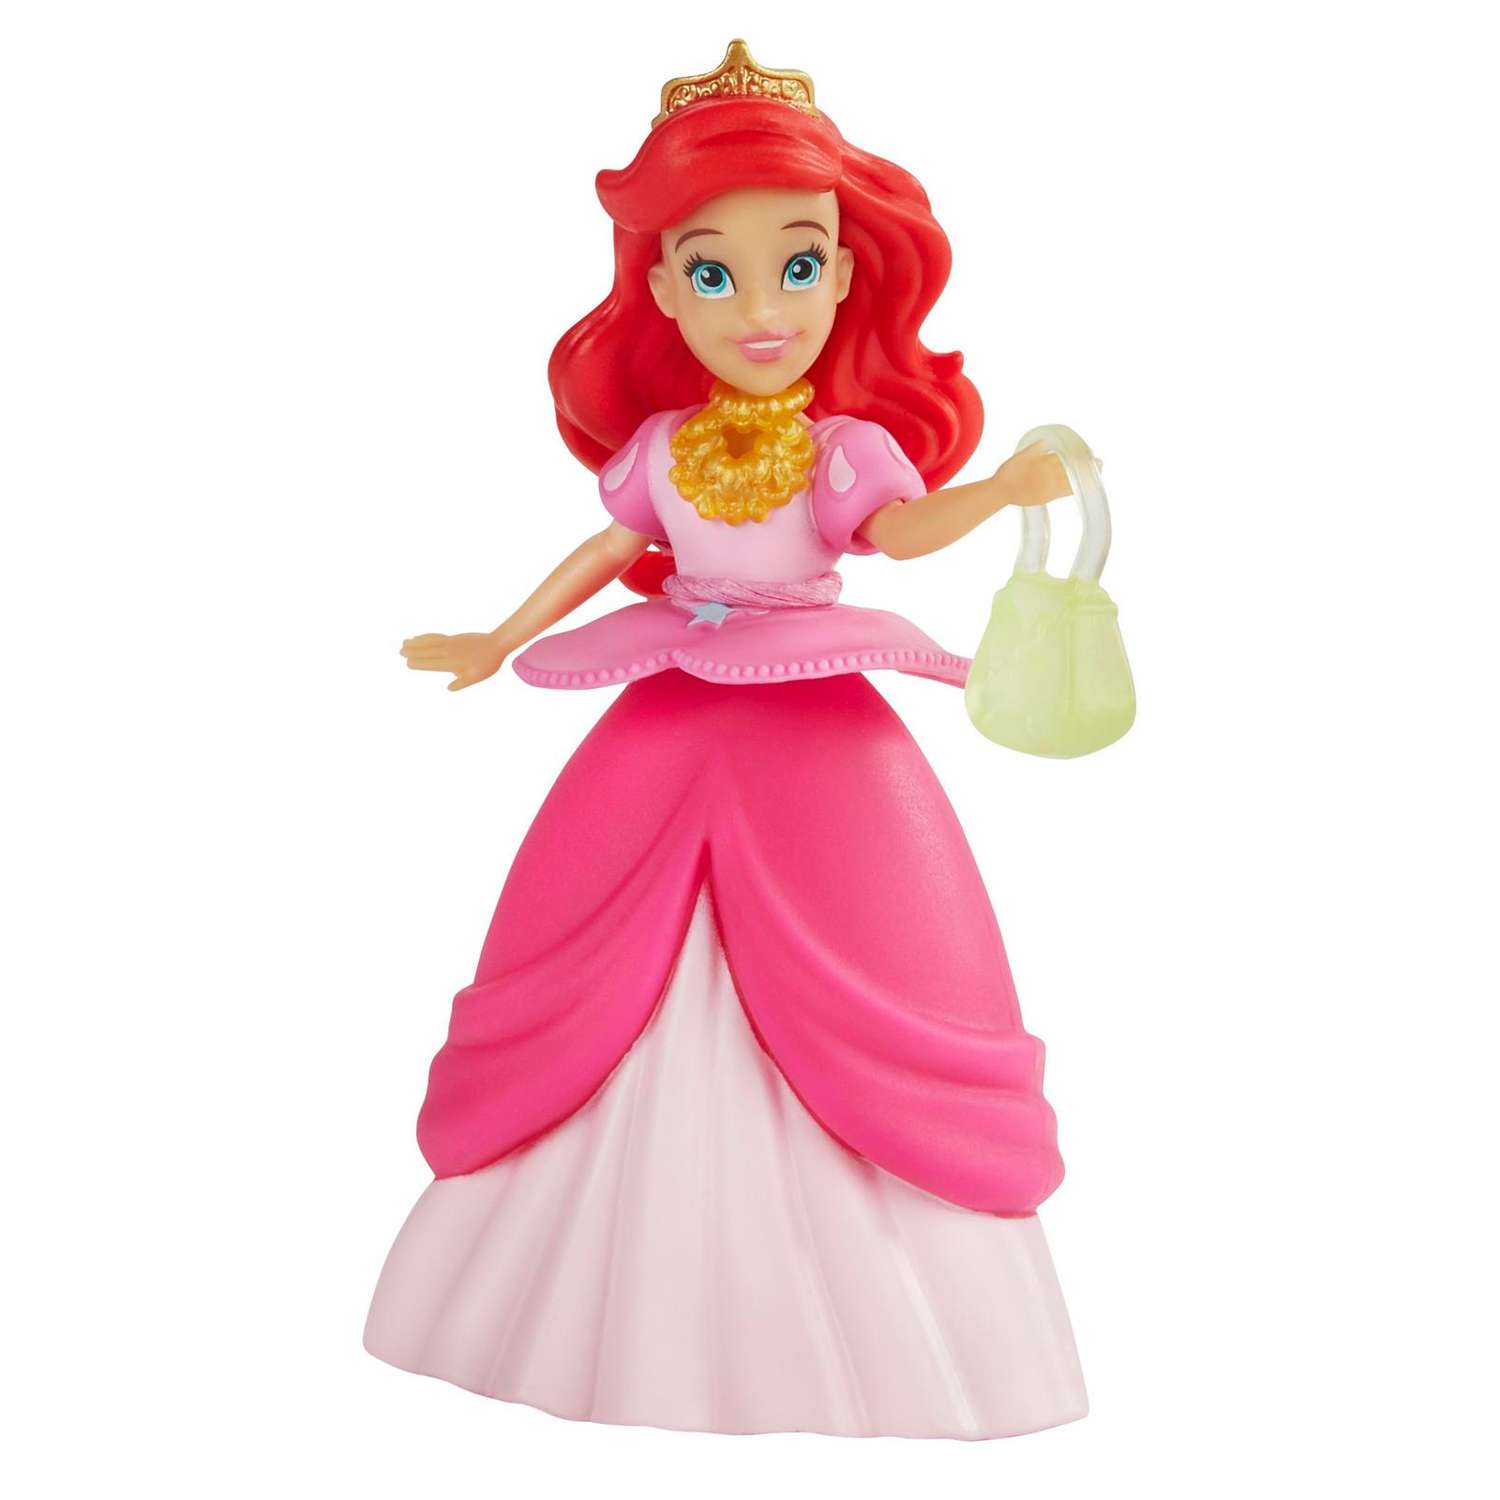 F ariel ru. Принцесса Hasbro. Кукла Disney Princess Hasbro модная Ариэль e91575x0. Кукла принцессы Диснея модный сюрприз. Принцессы Дисней Хасбро модный сюрприз купить.